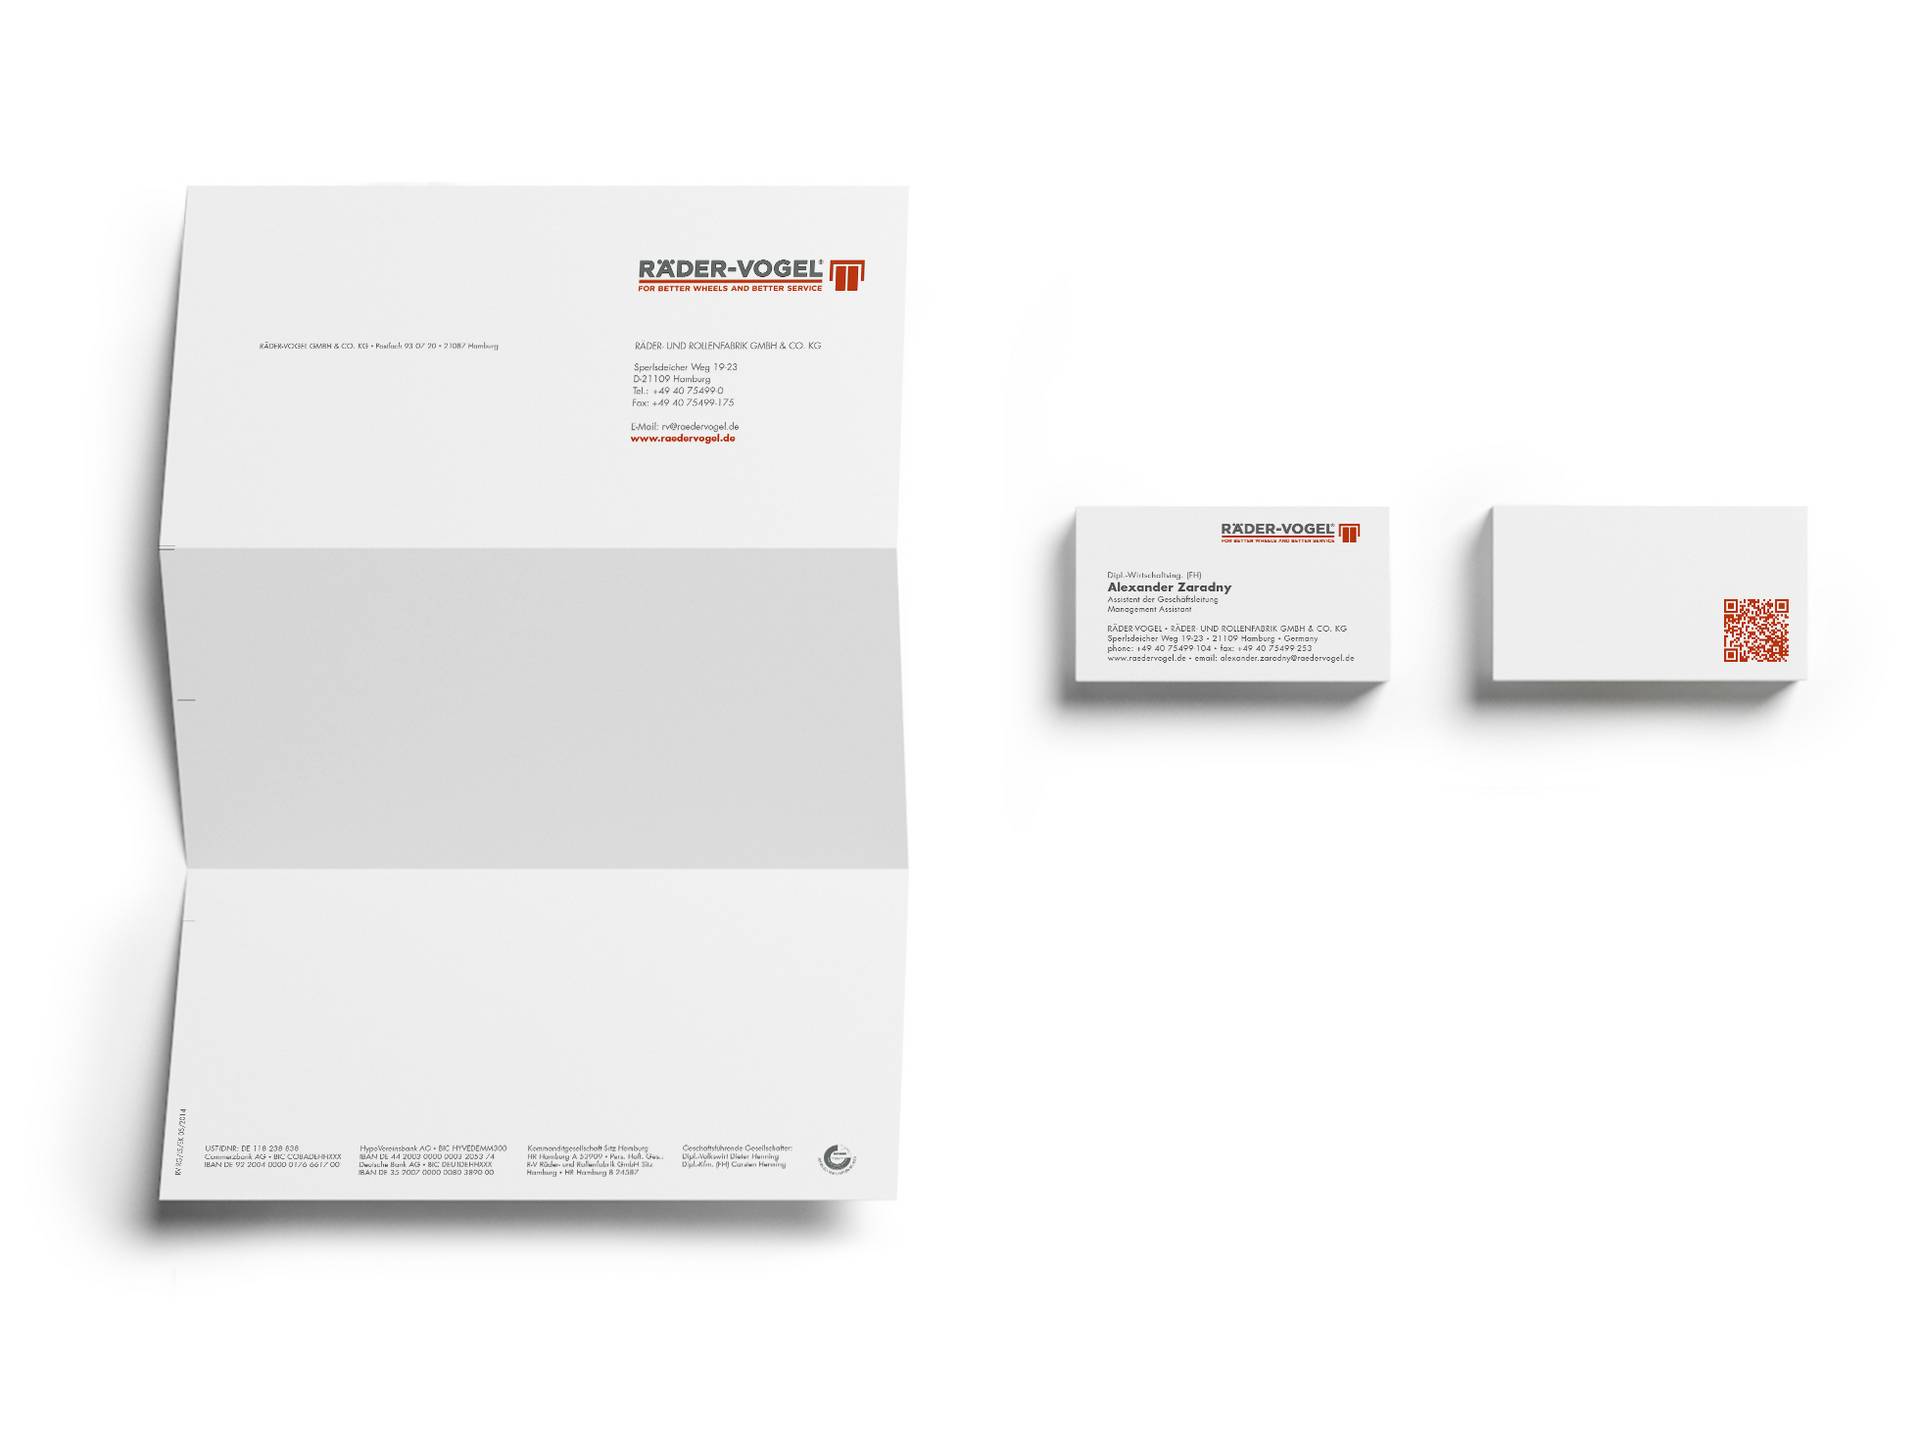 Briefbogen und Visitenkarte im neuen Corporate Design